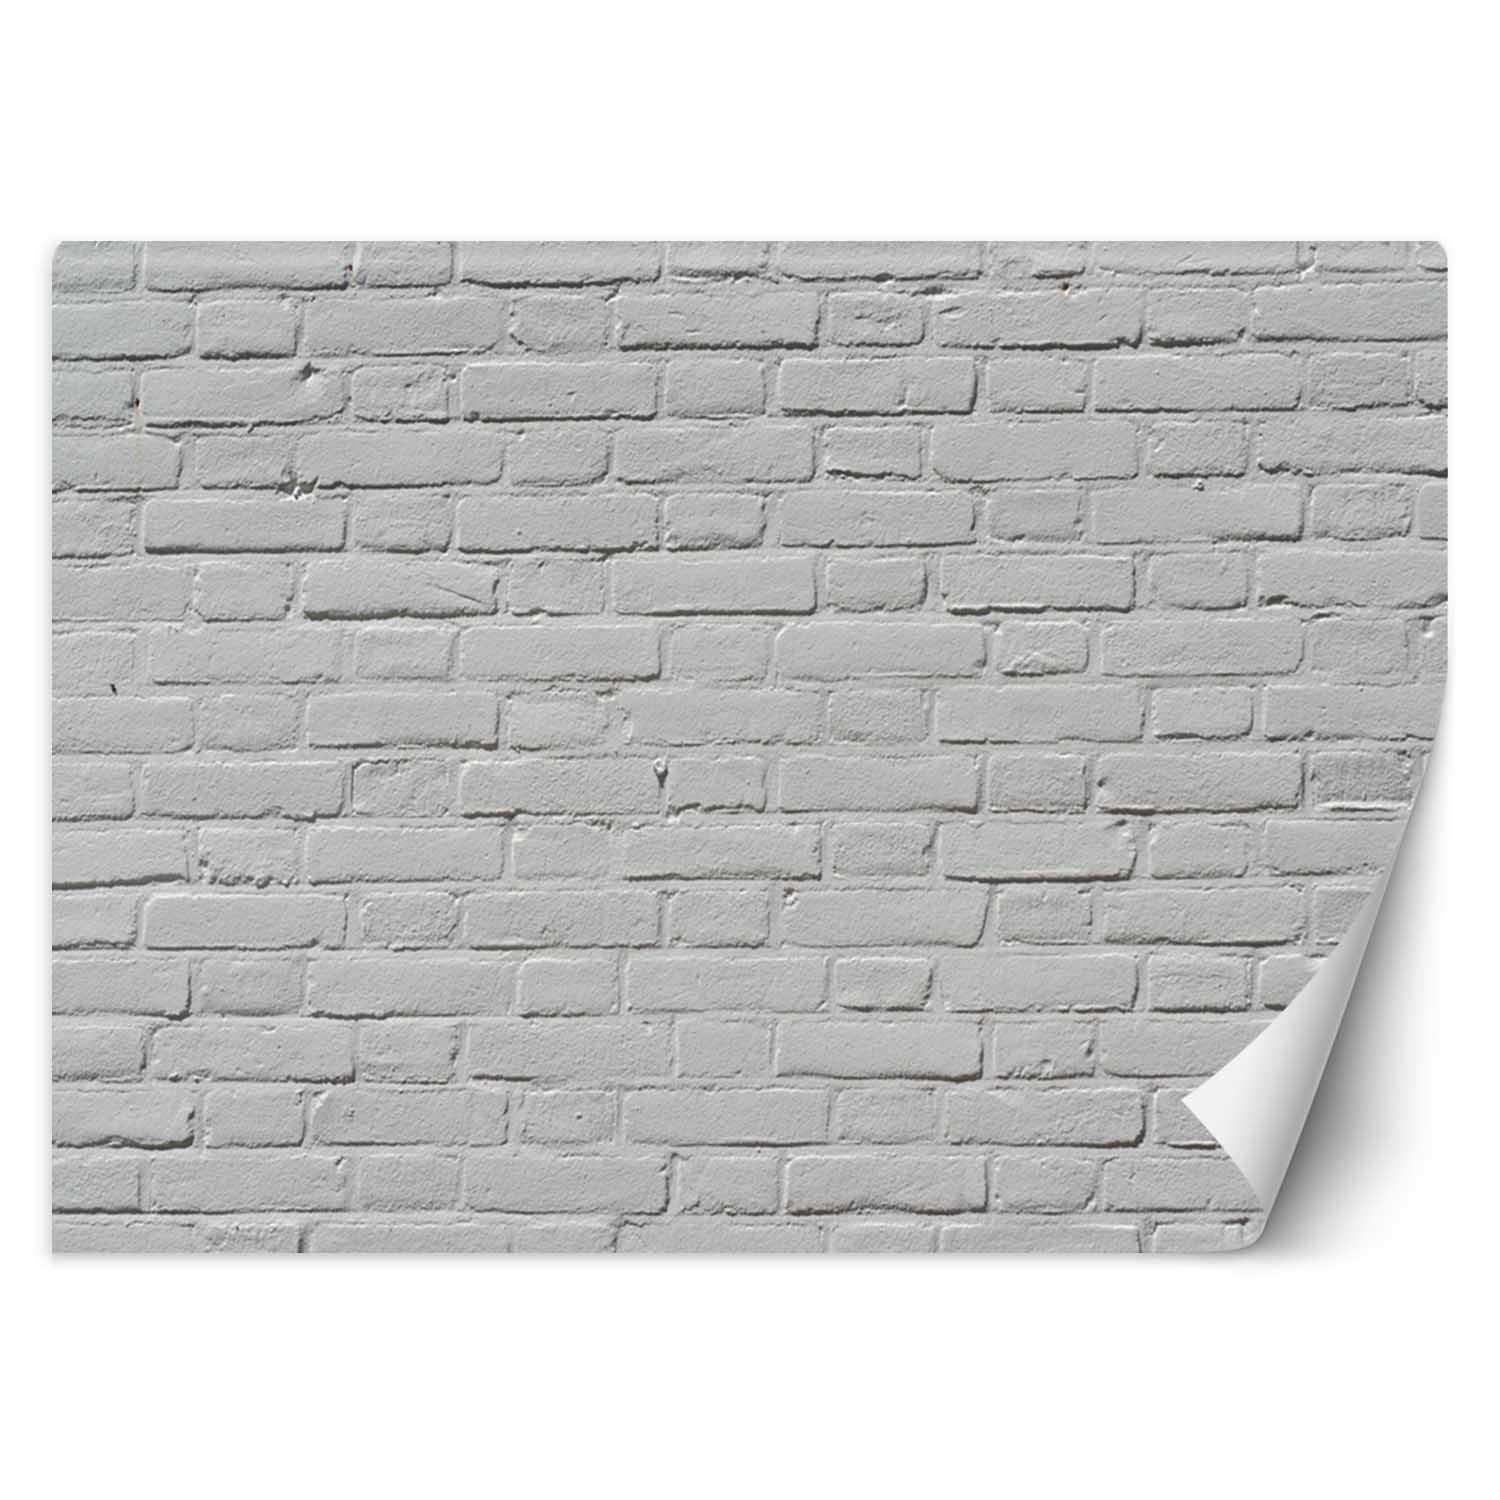 Trend24 – Behang – Witte Bakstenen Muur – Behangpapier – Behang Woonkamer – Fotobehang – 450x315x2 cm – Incl. behanglijm